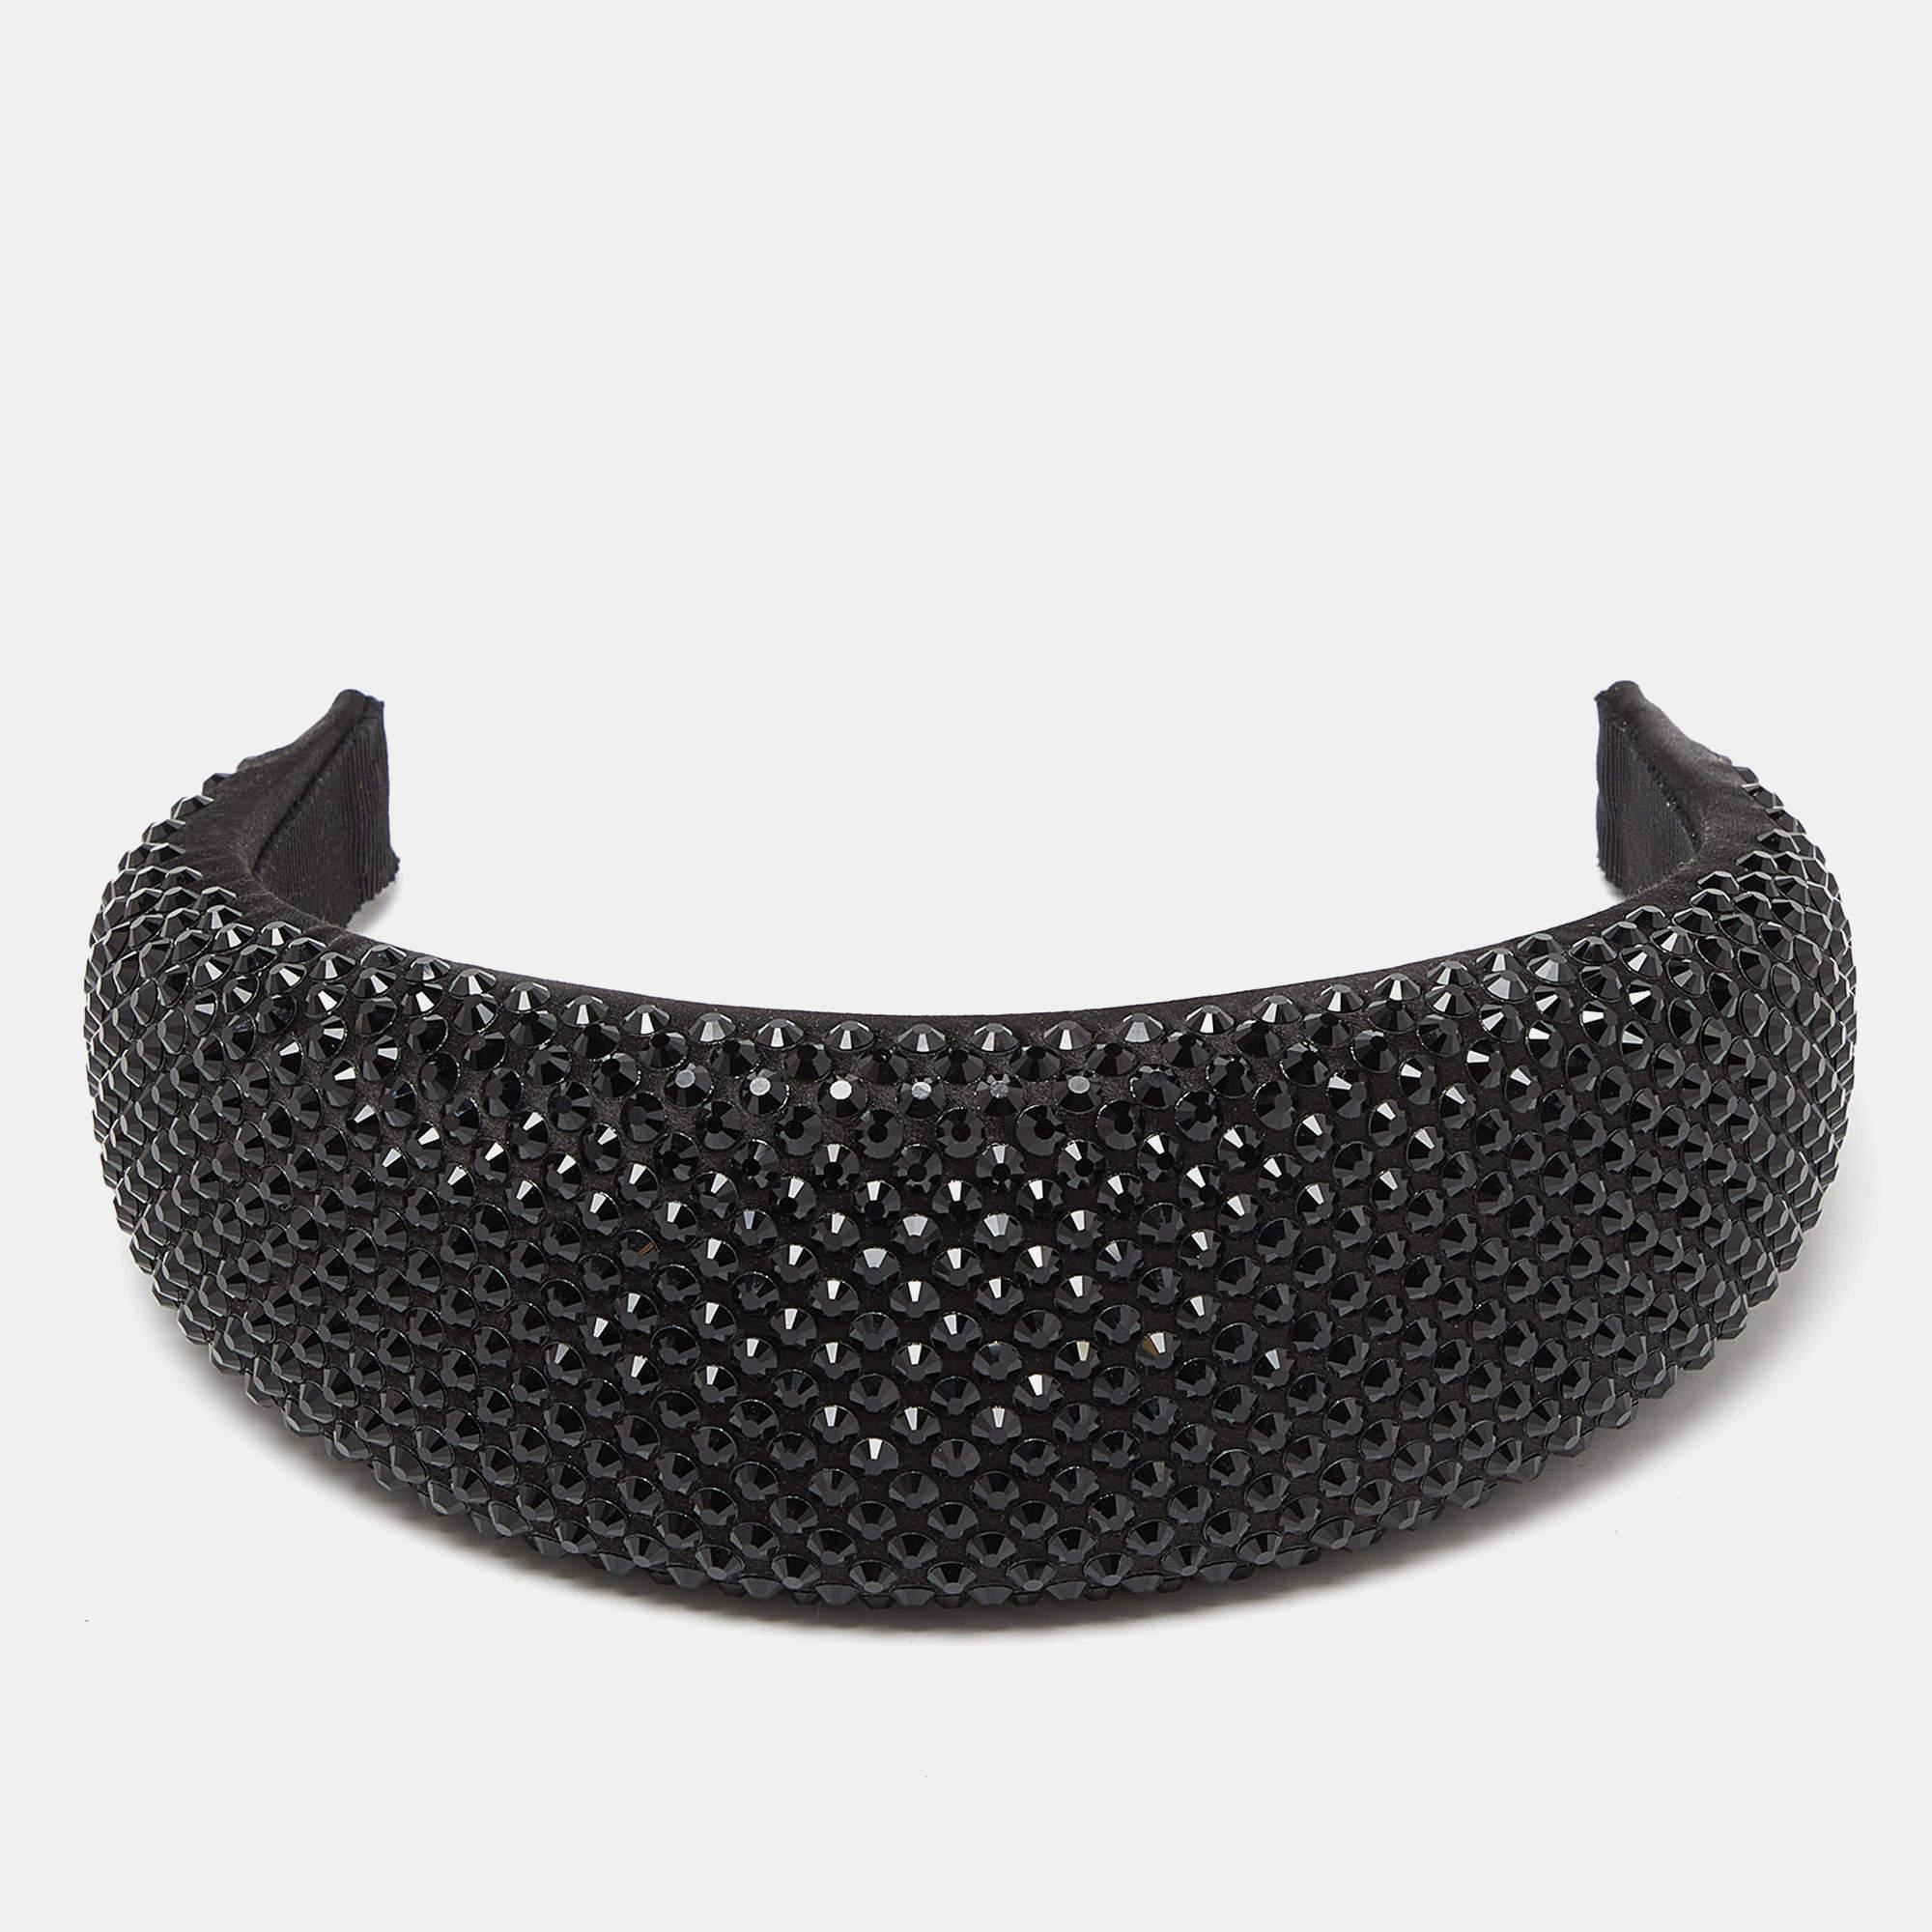 Dieses hübsche Stirnband von Prada ist ein unverzichtbares Accessoire! Das mit schwarzen Kristallen besetzte Stirnband lässt sich leicht anlegen und sieht sowohl zu lässigen, schicken Outfits als auch zu Abendkleidern hinreißend aus.

Enthält: